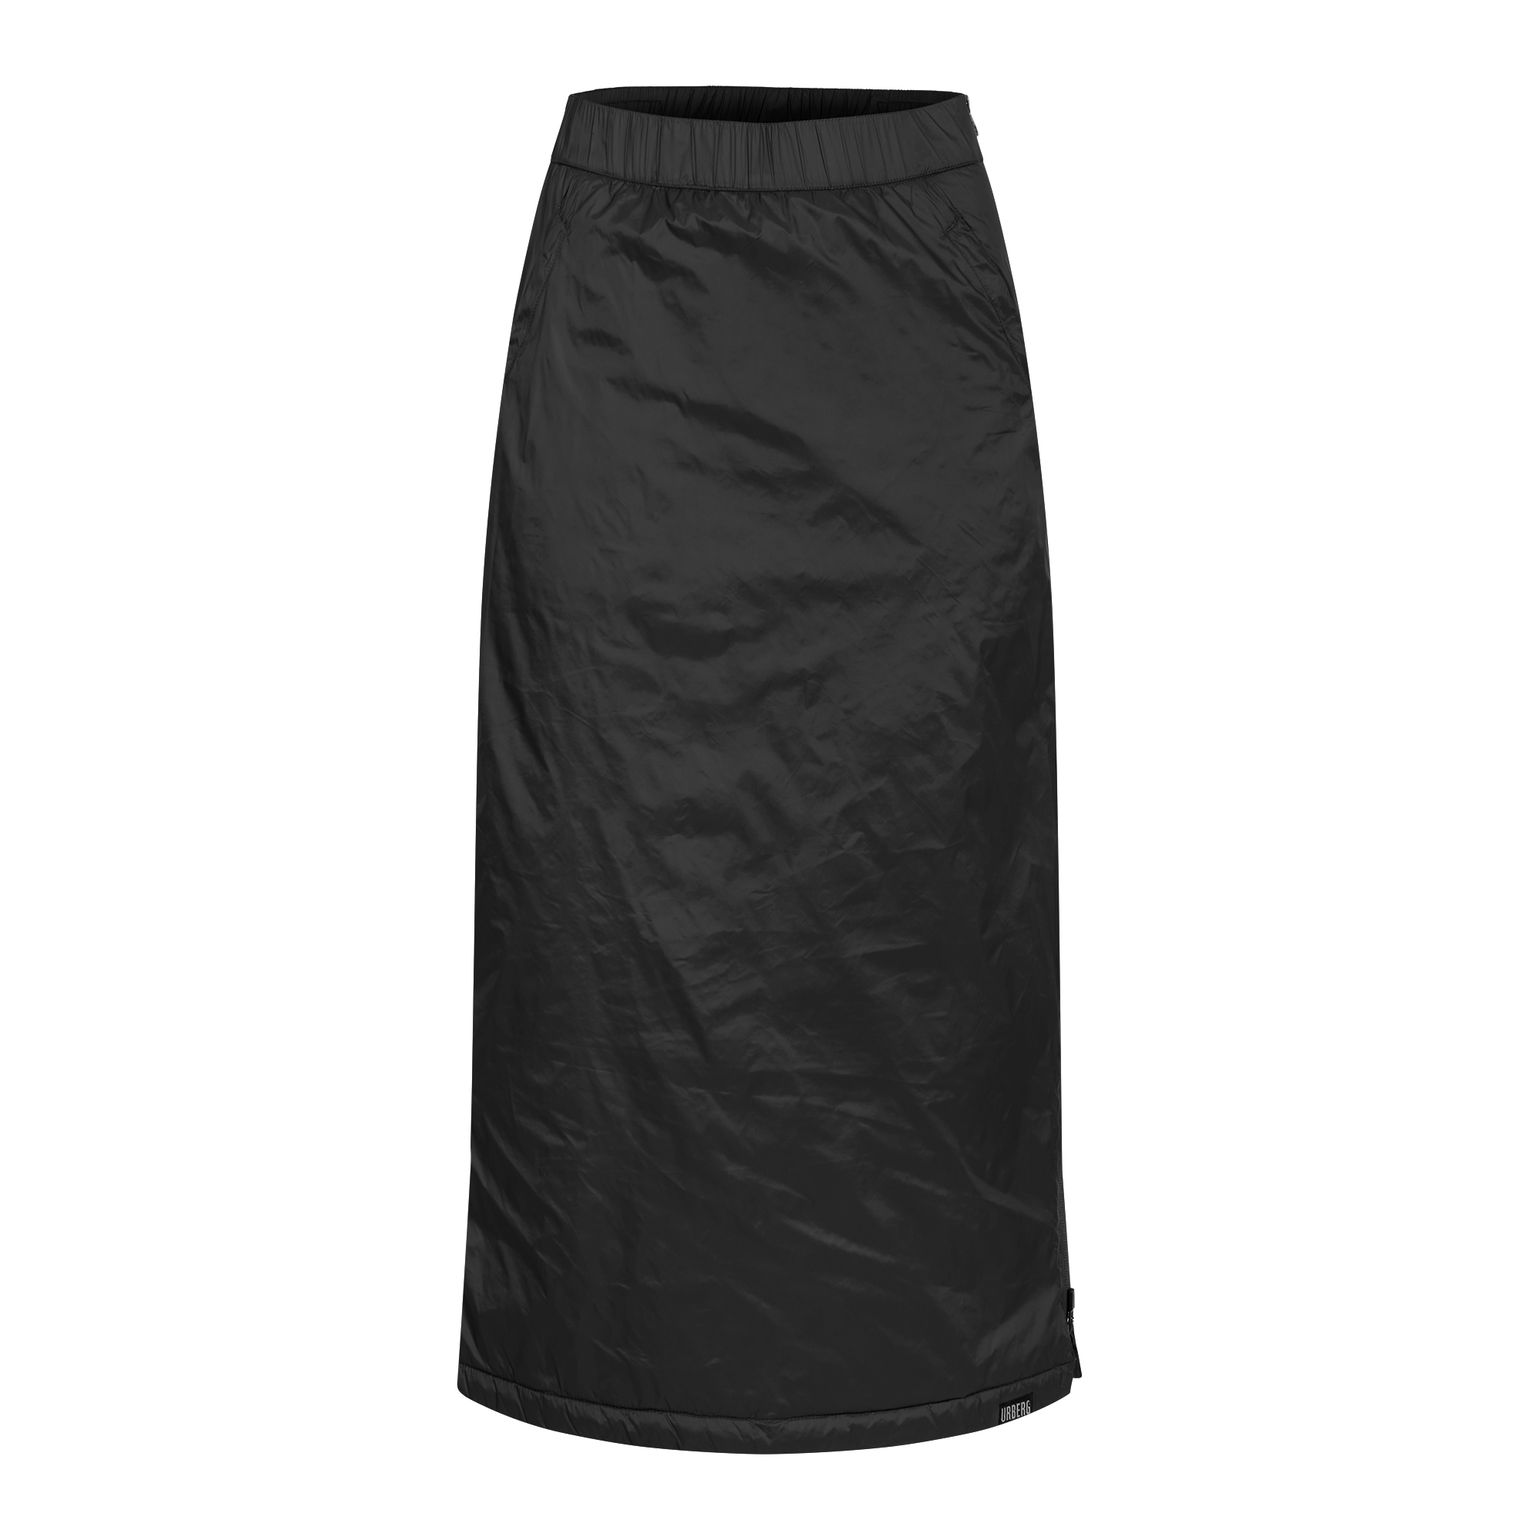 Urberg Women's Vittangi Long Padded Skirt Black Beauty